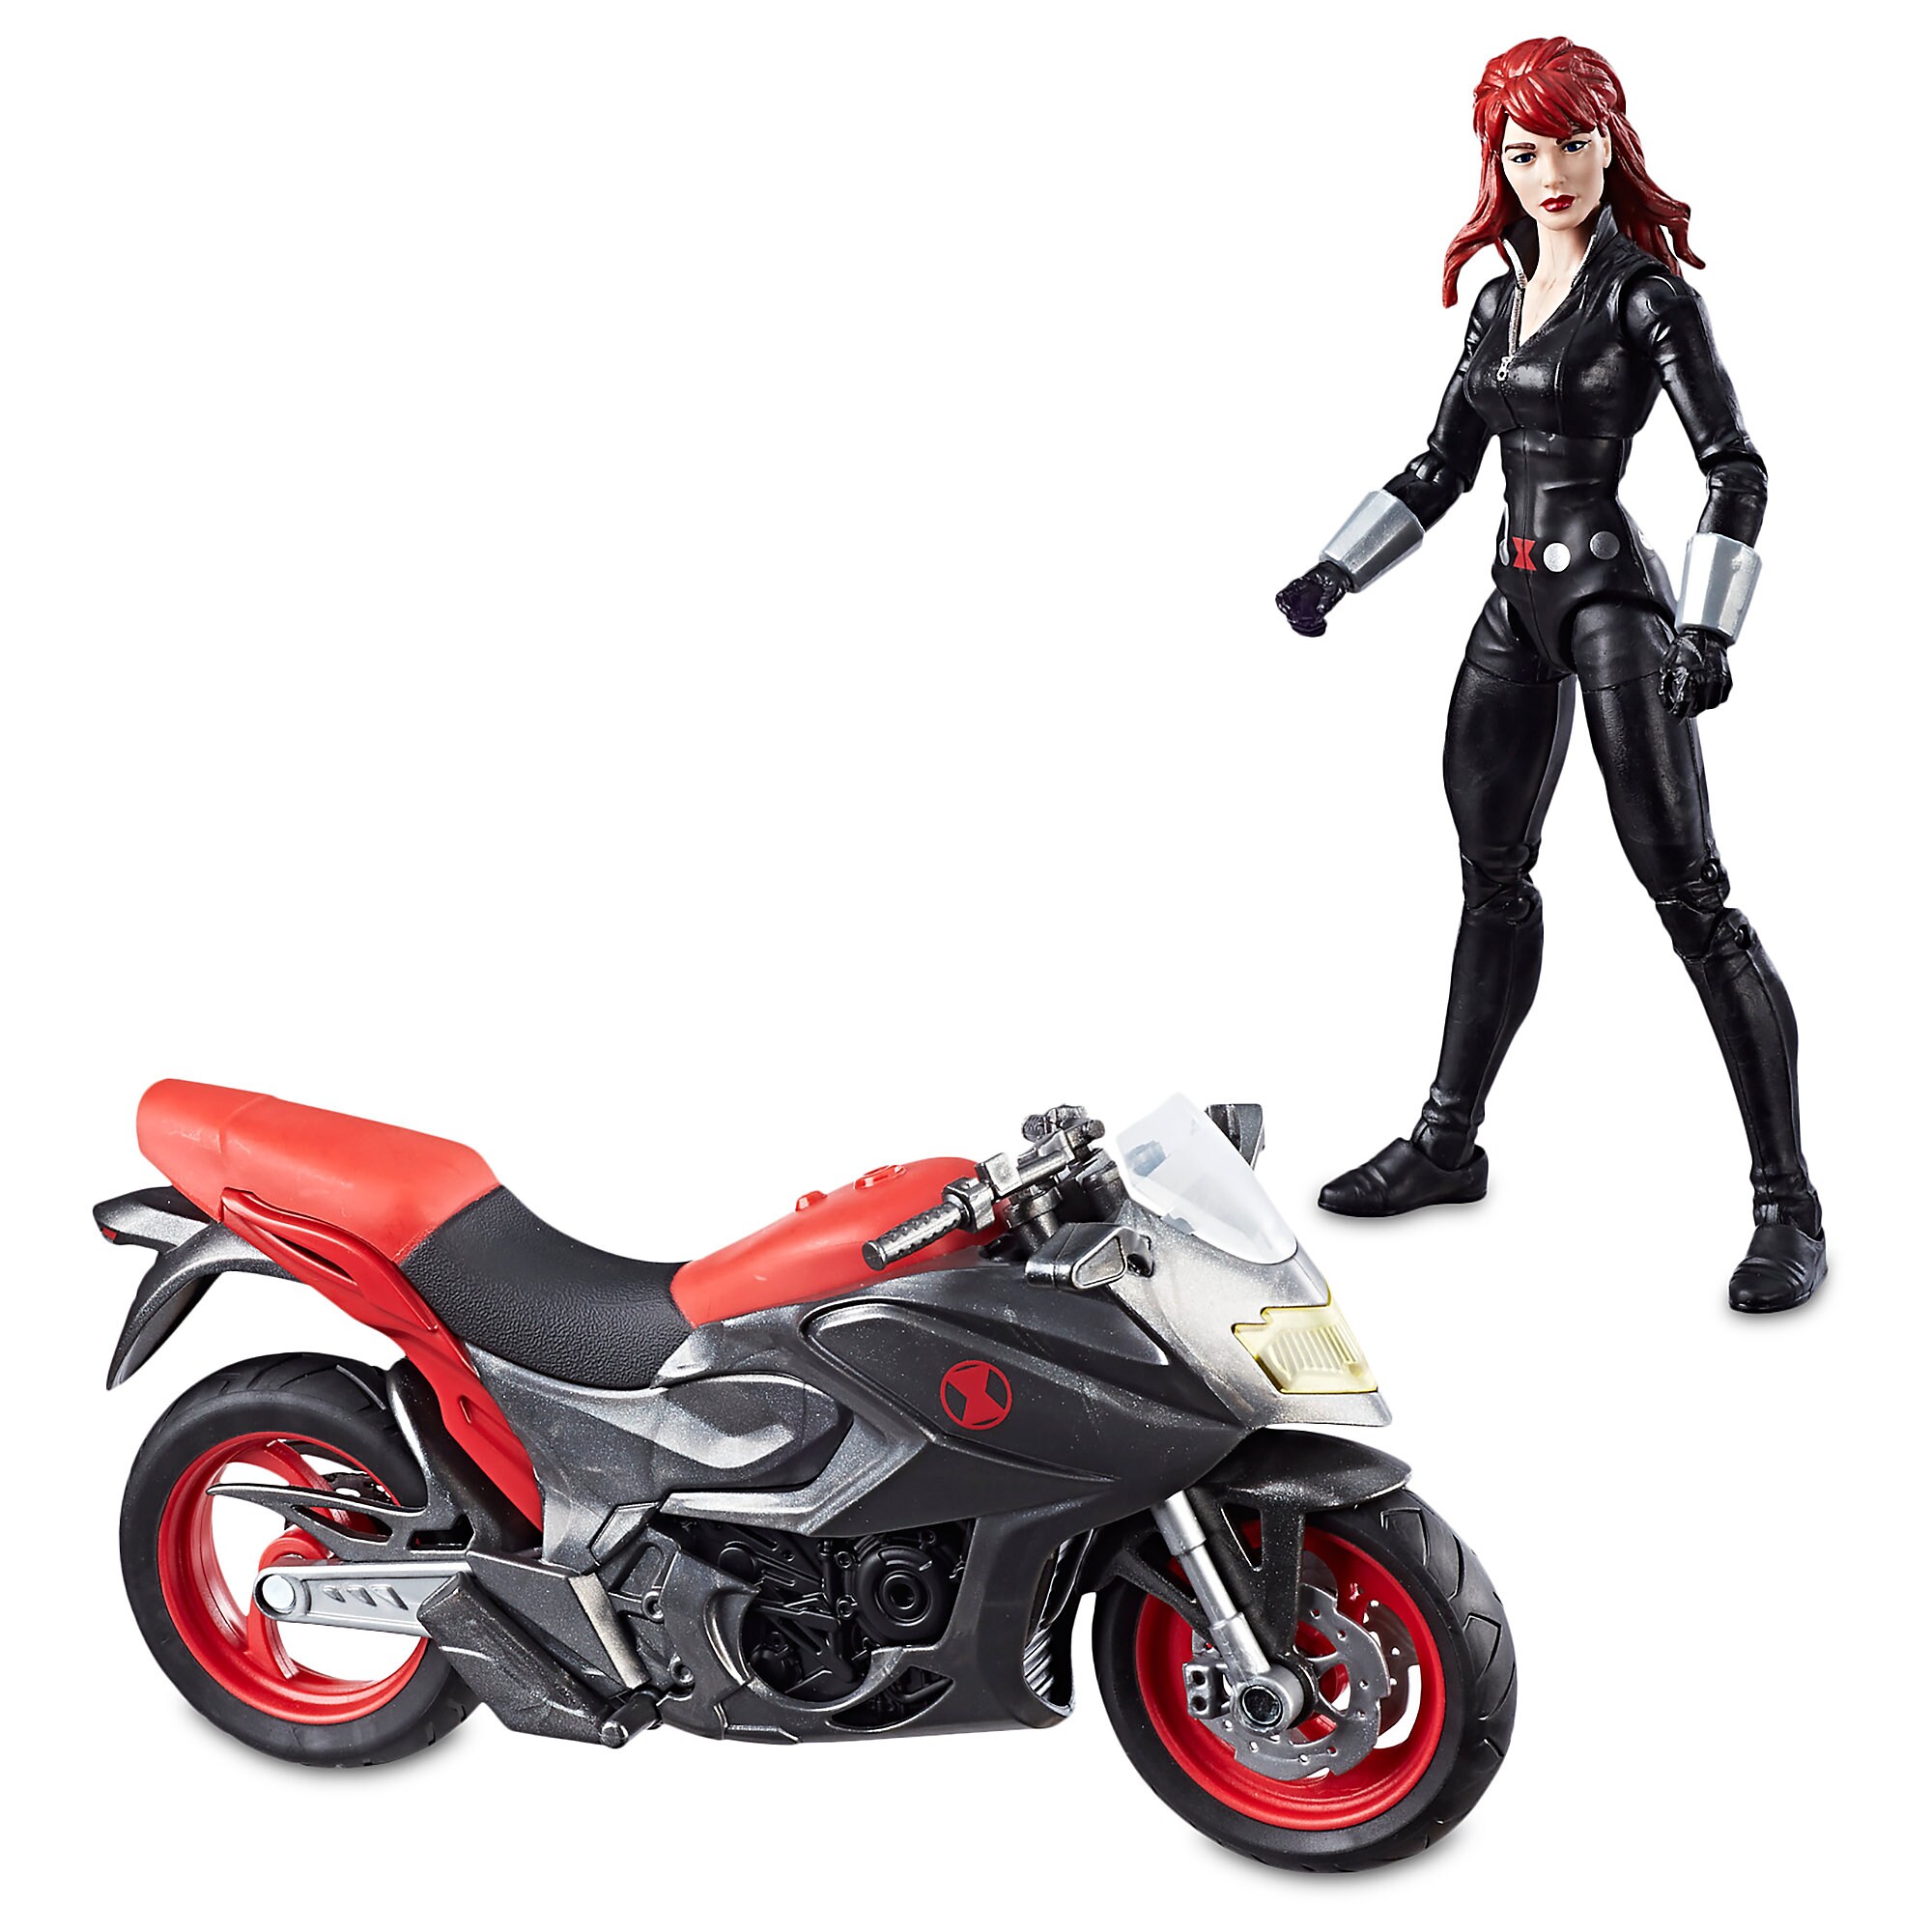 Black Widow Action Figure - Marvel Legends Series